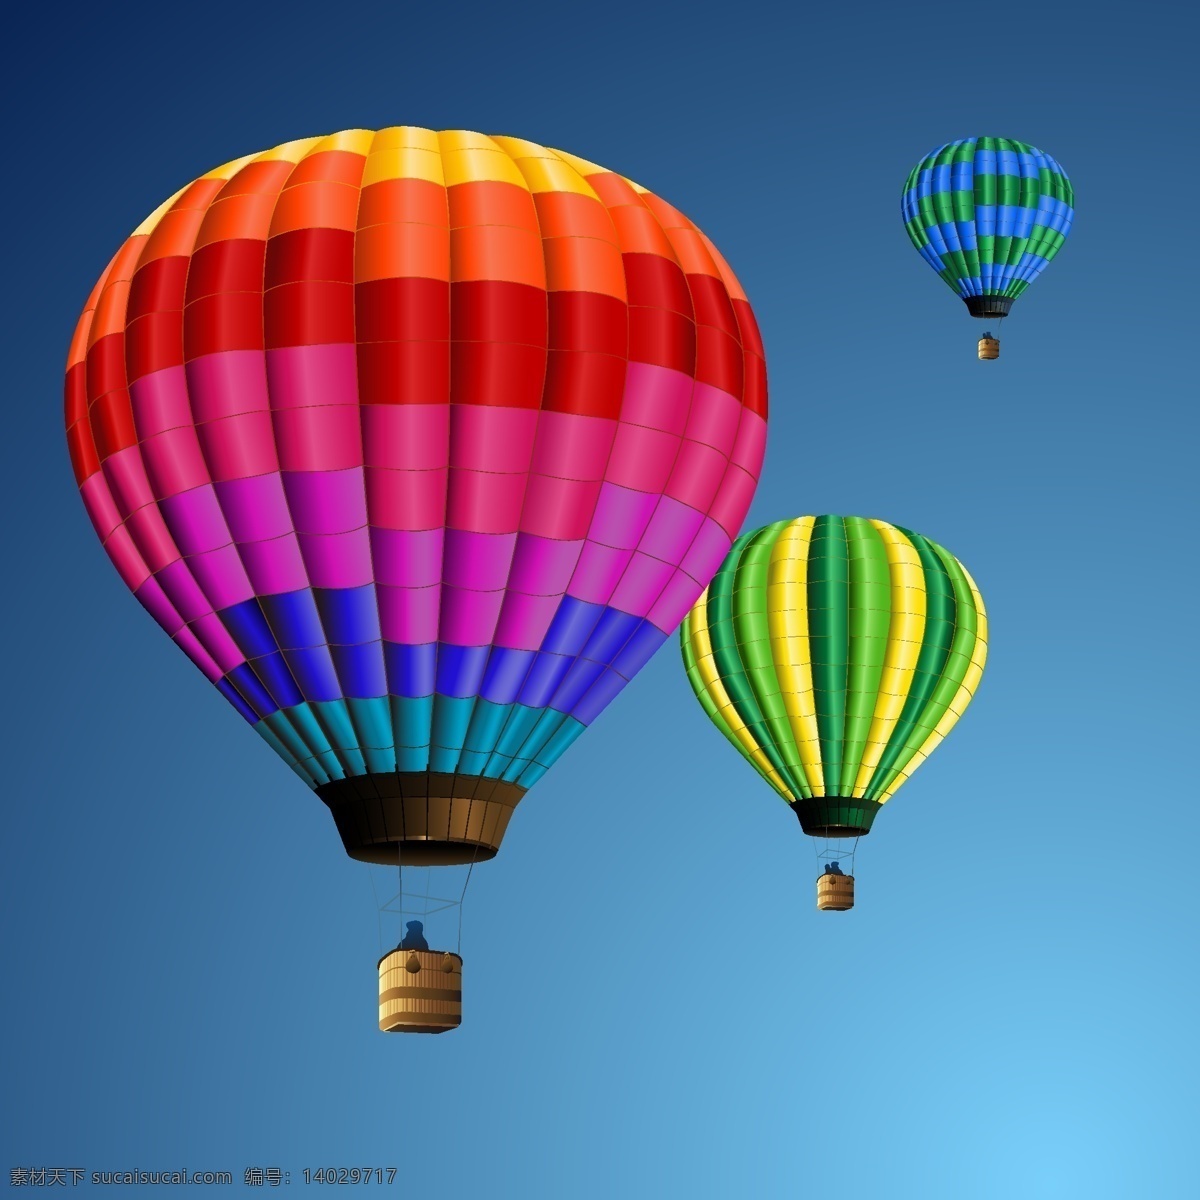 正在 飞行 彩色 热气球 热气球素材 好看的热气球 彩色热气球 卡通热气球 热气球背景 空中热气球 热气球源文件 蓝天 白云 蓝天白云 草地 绿地 绿草地 飘带 天空热气球 天空气球 热气球创意 彩虹 鲜花 音乐创意 热气球蓝天 自然景观 自然风光 平面素材